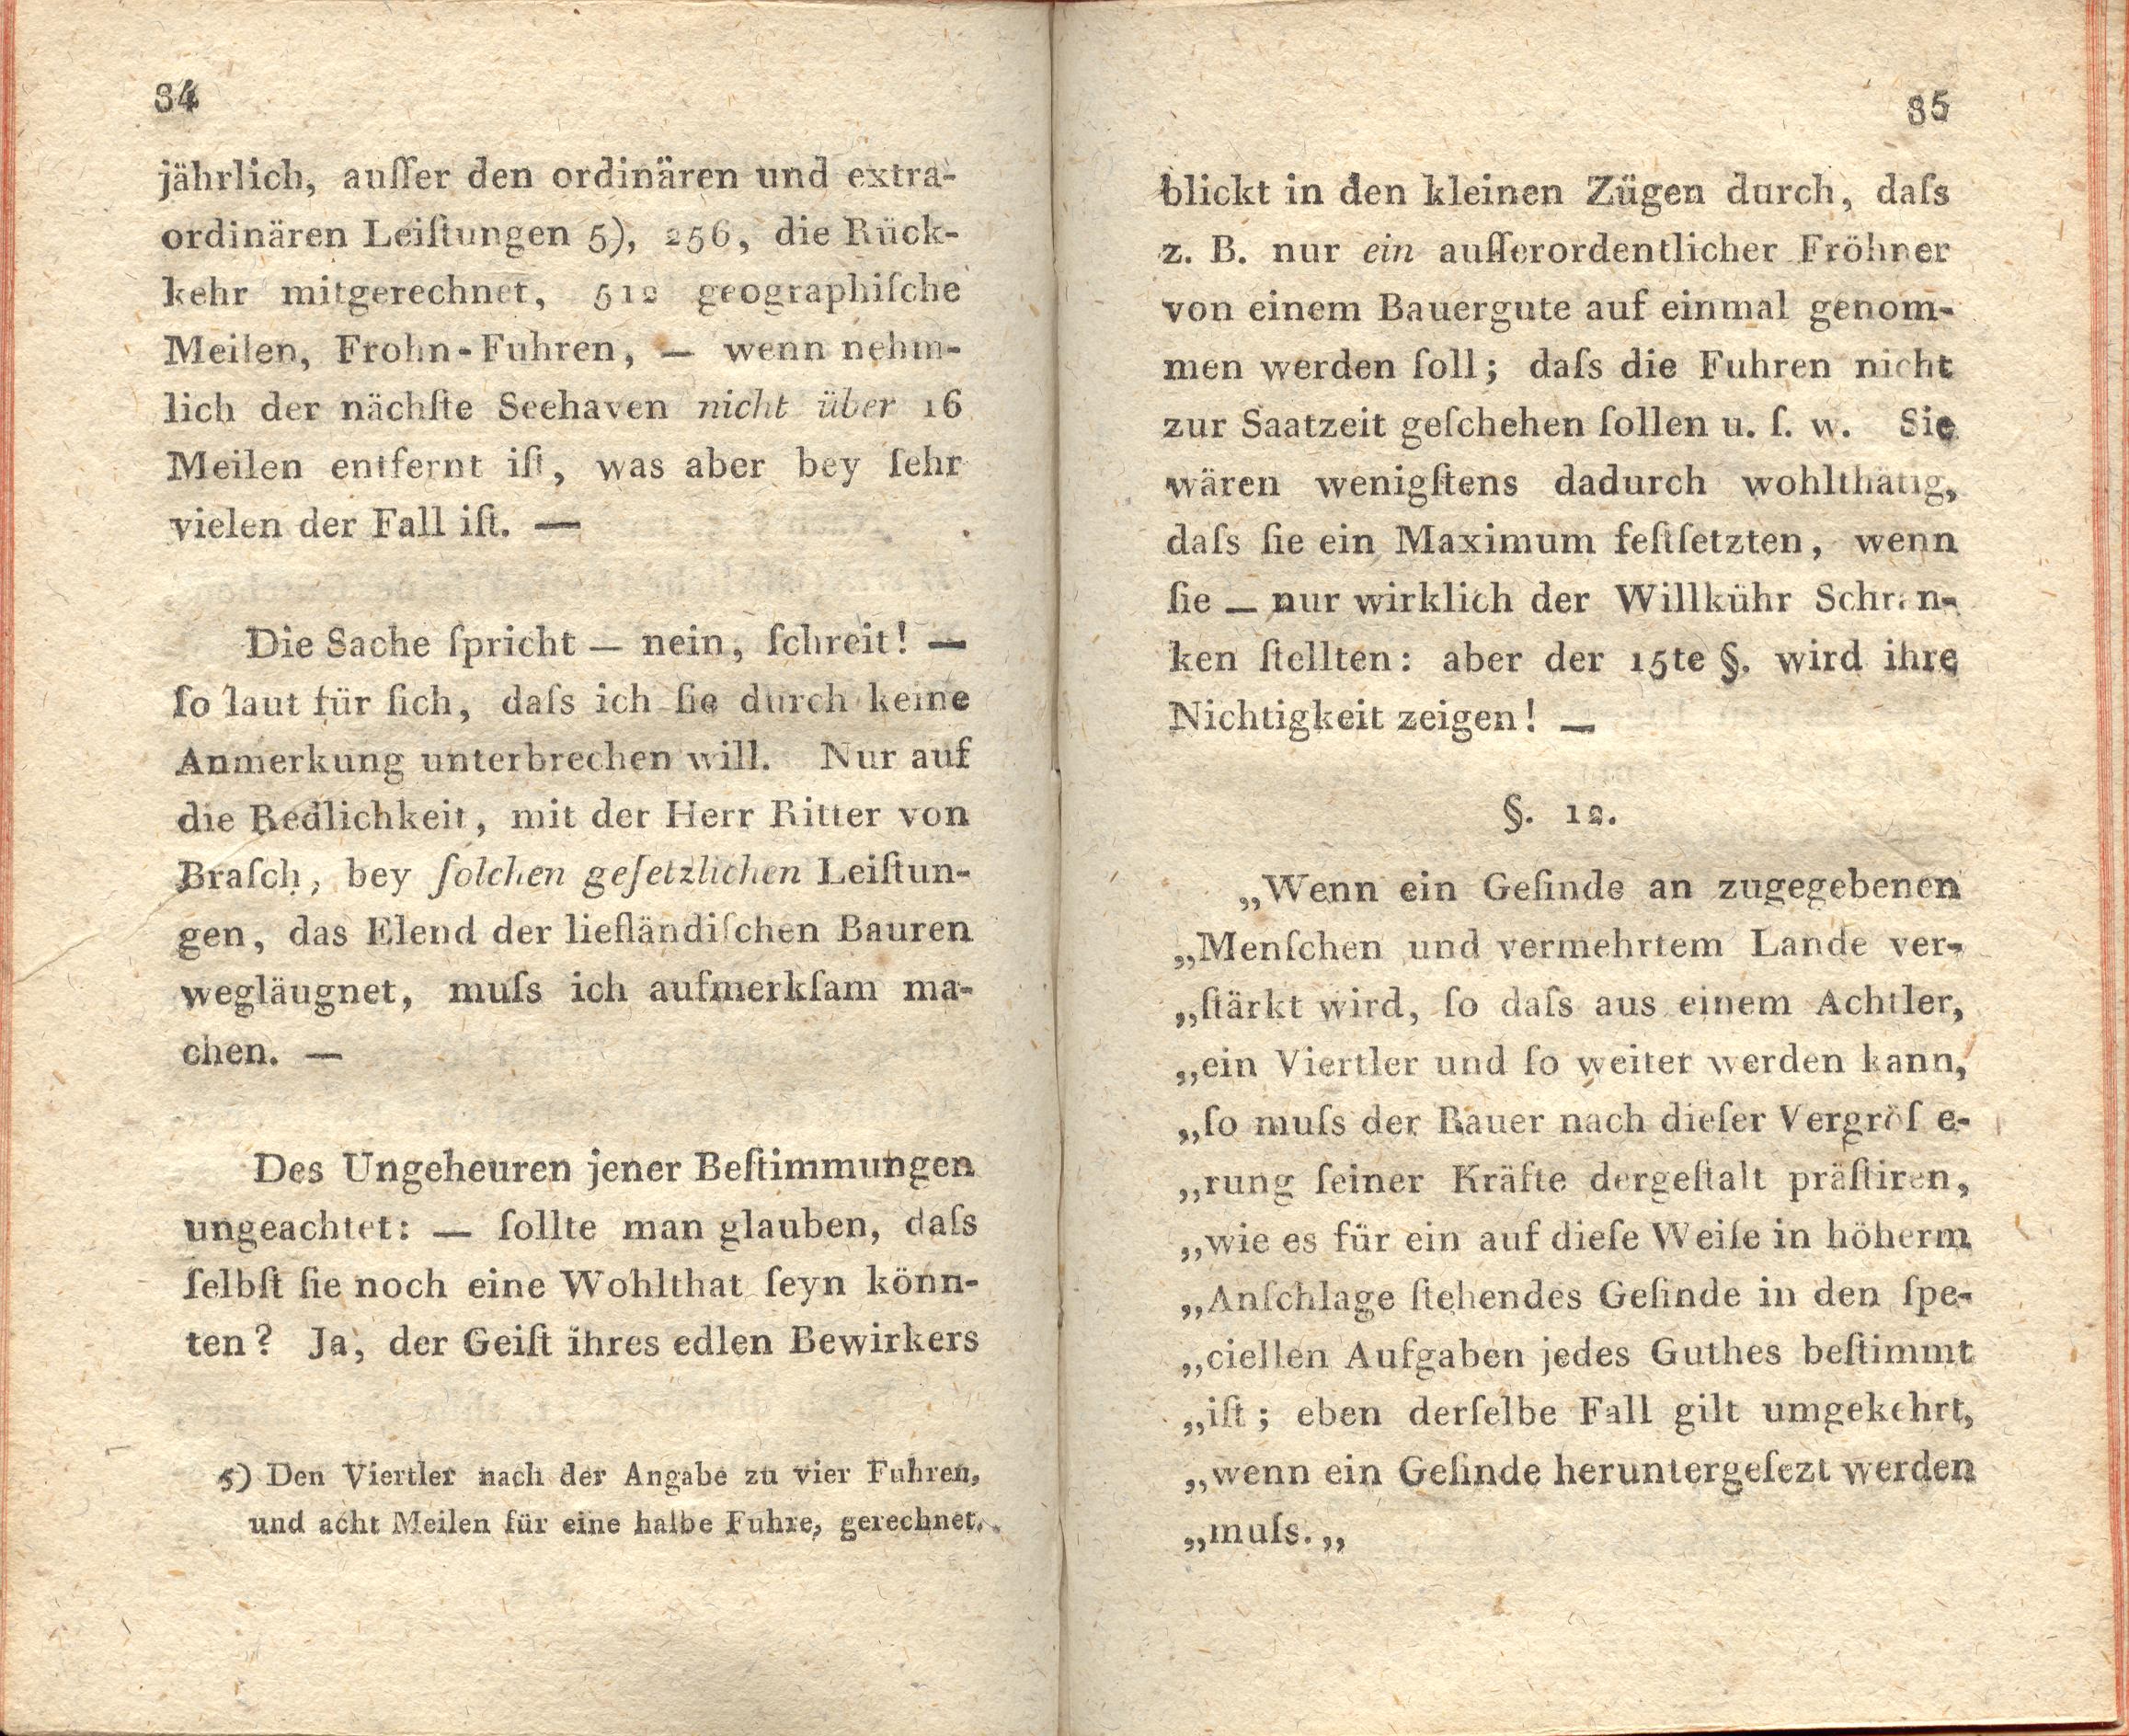 Supplement zu den Letten (1798) | 43. (84-85) Haupttext